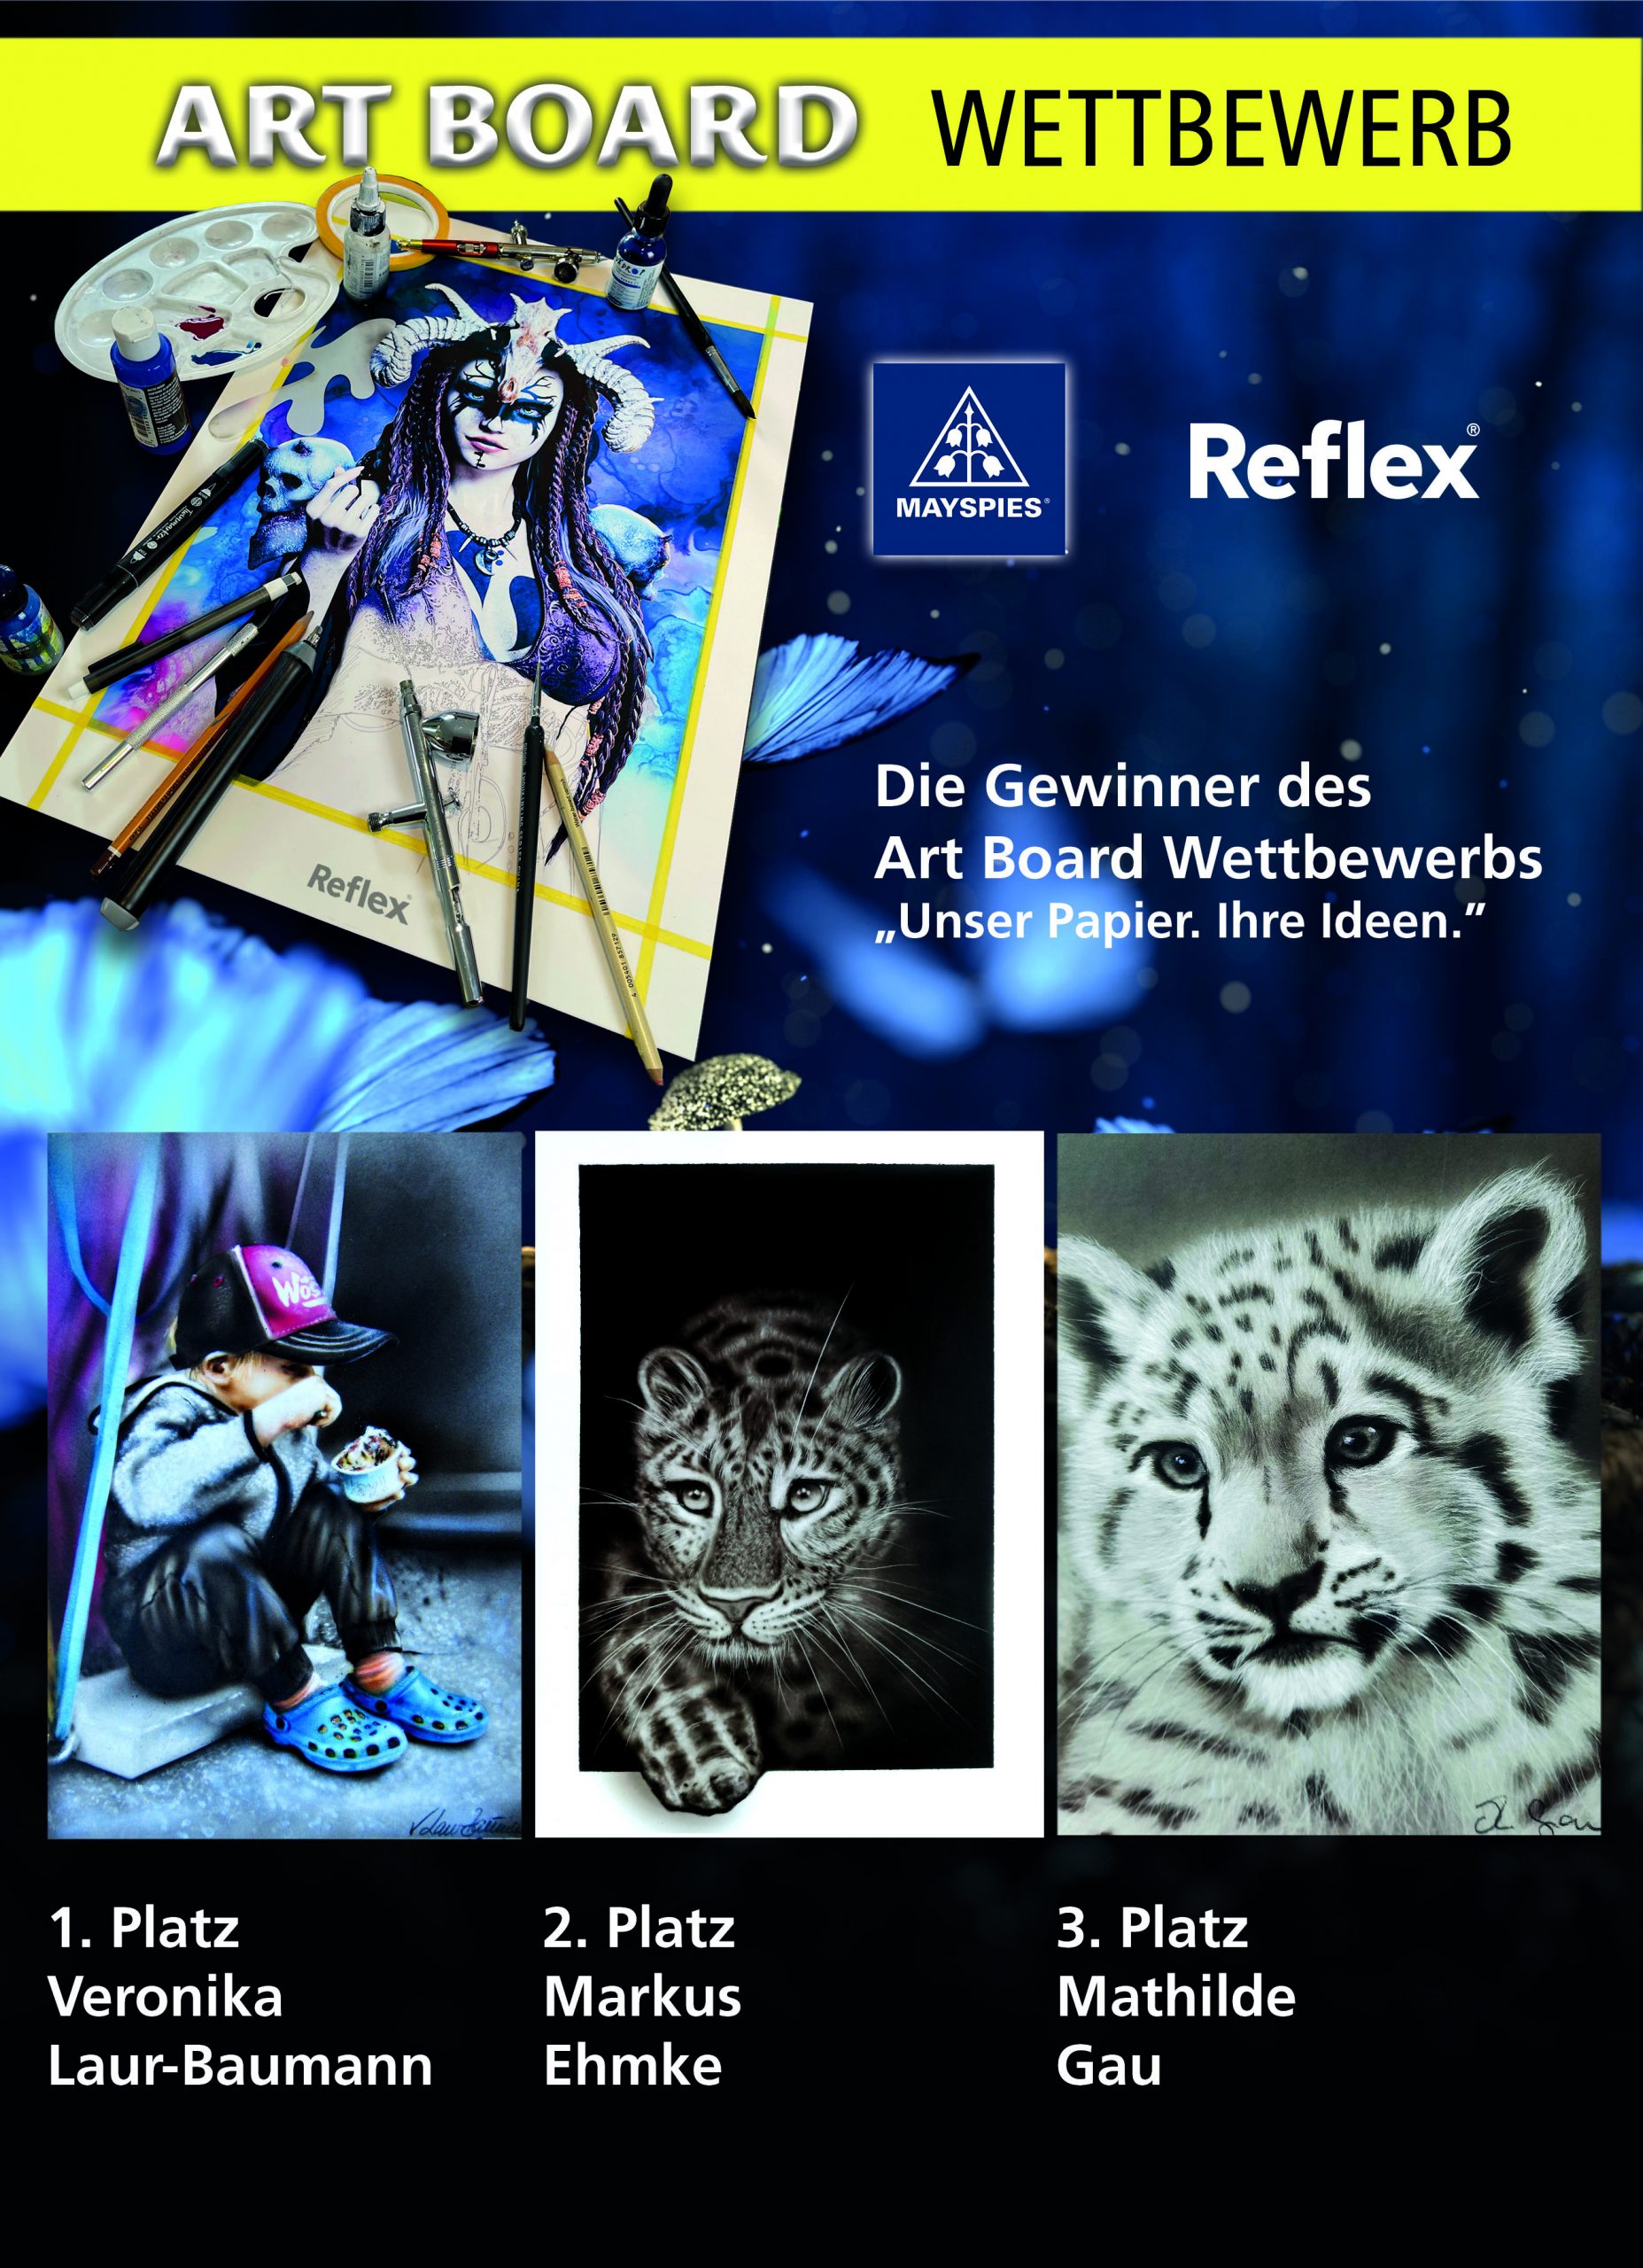 Die Gewinner des Reflex Art Board Wettbewerbs „Unser Papier. Ihre Ideen.“